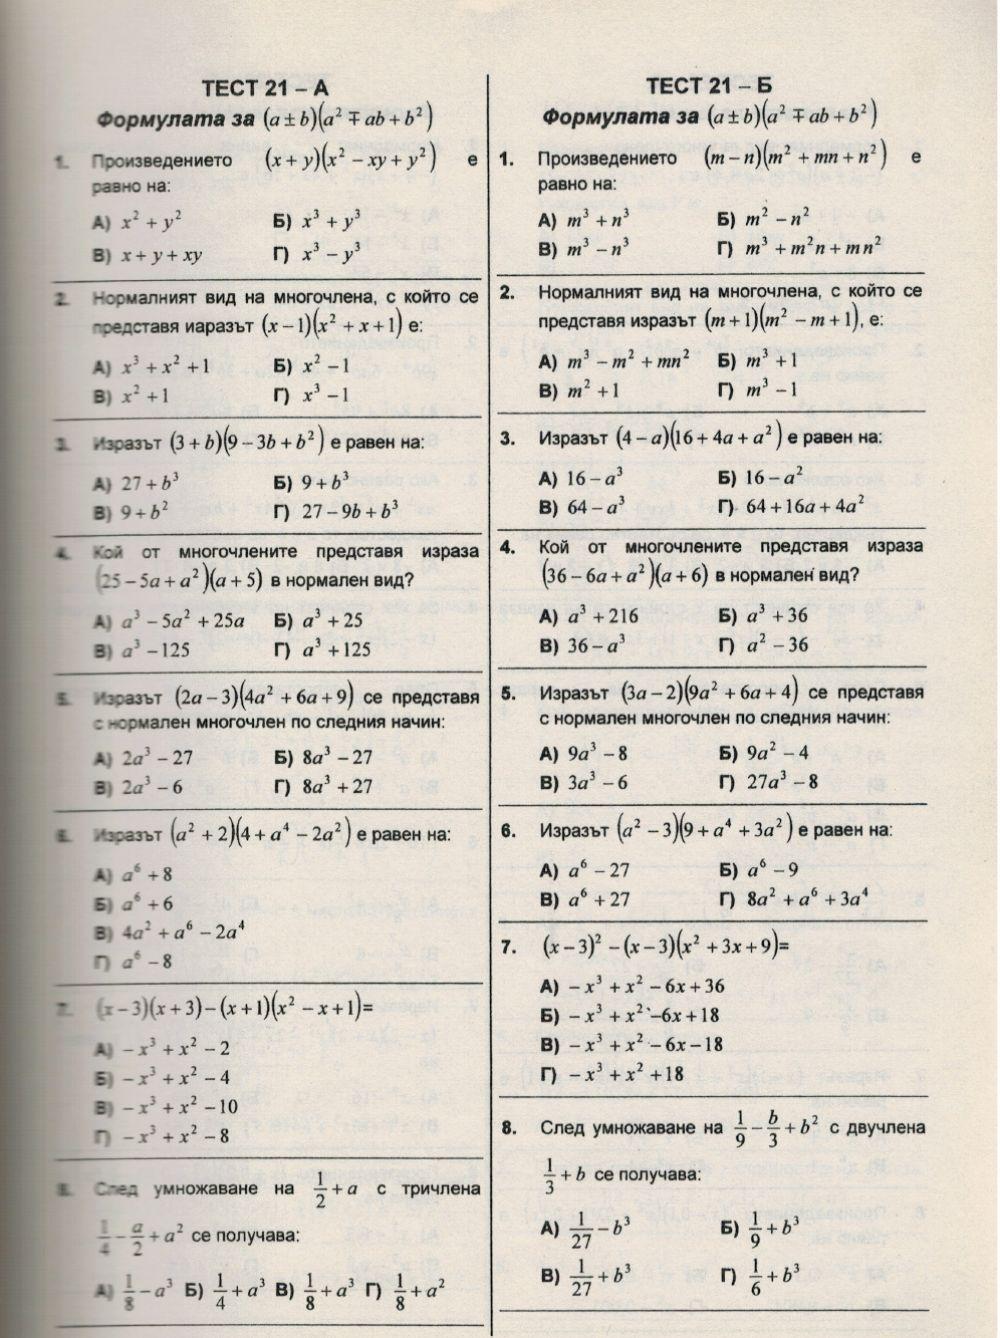 Формулата (а+в) на 3та степен